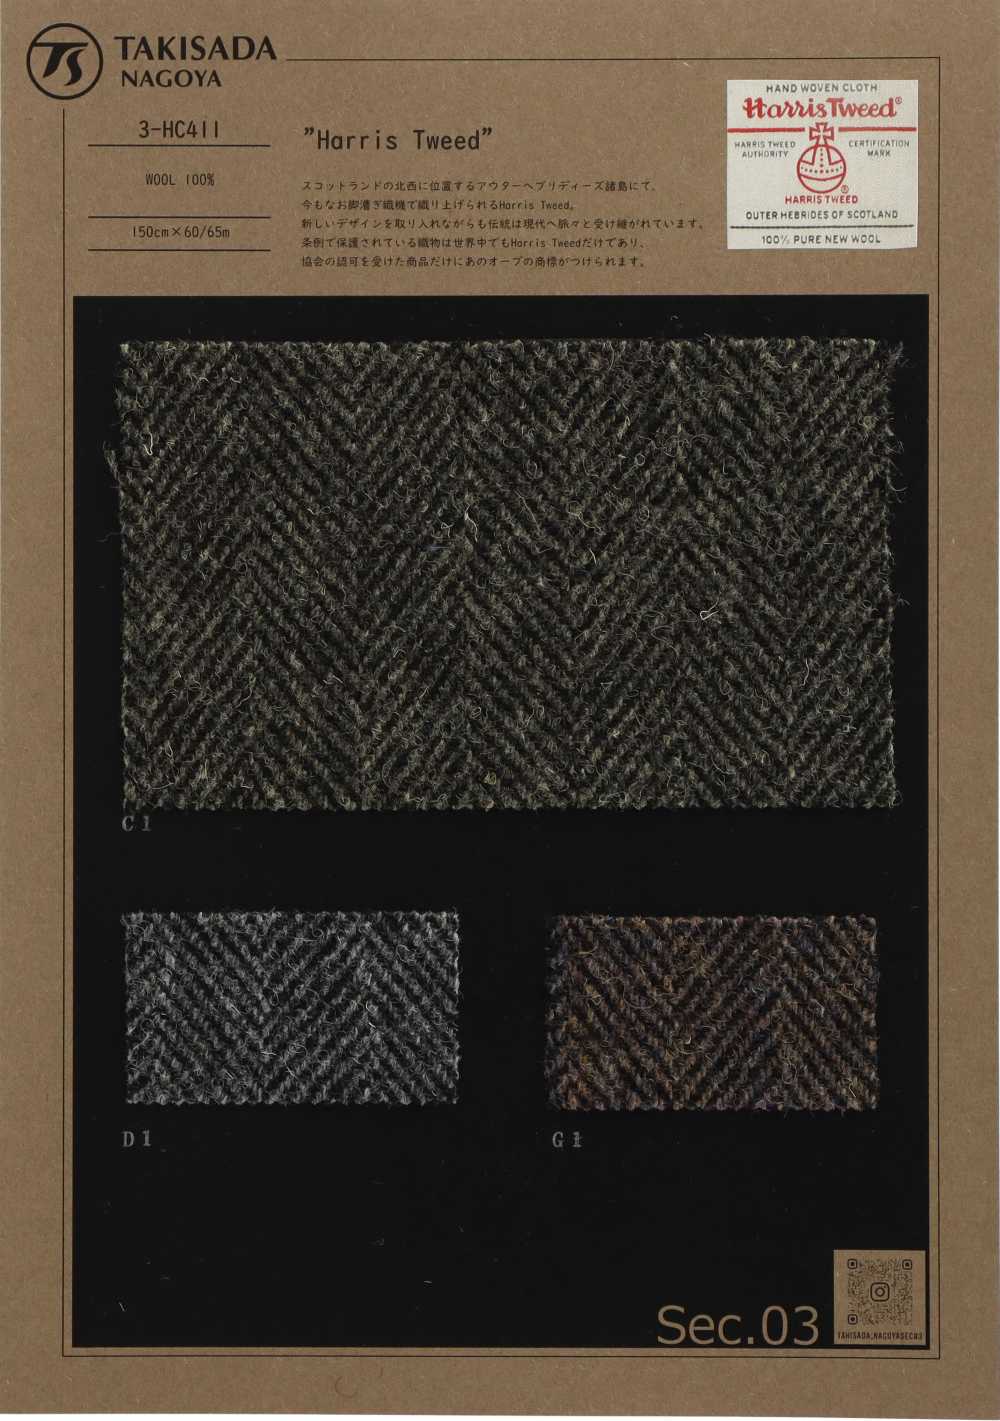 3-HC411 HARRIS Harris Tweed Espiga[Fabrica Textil] Takisada Nagoya